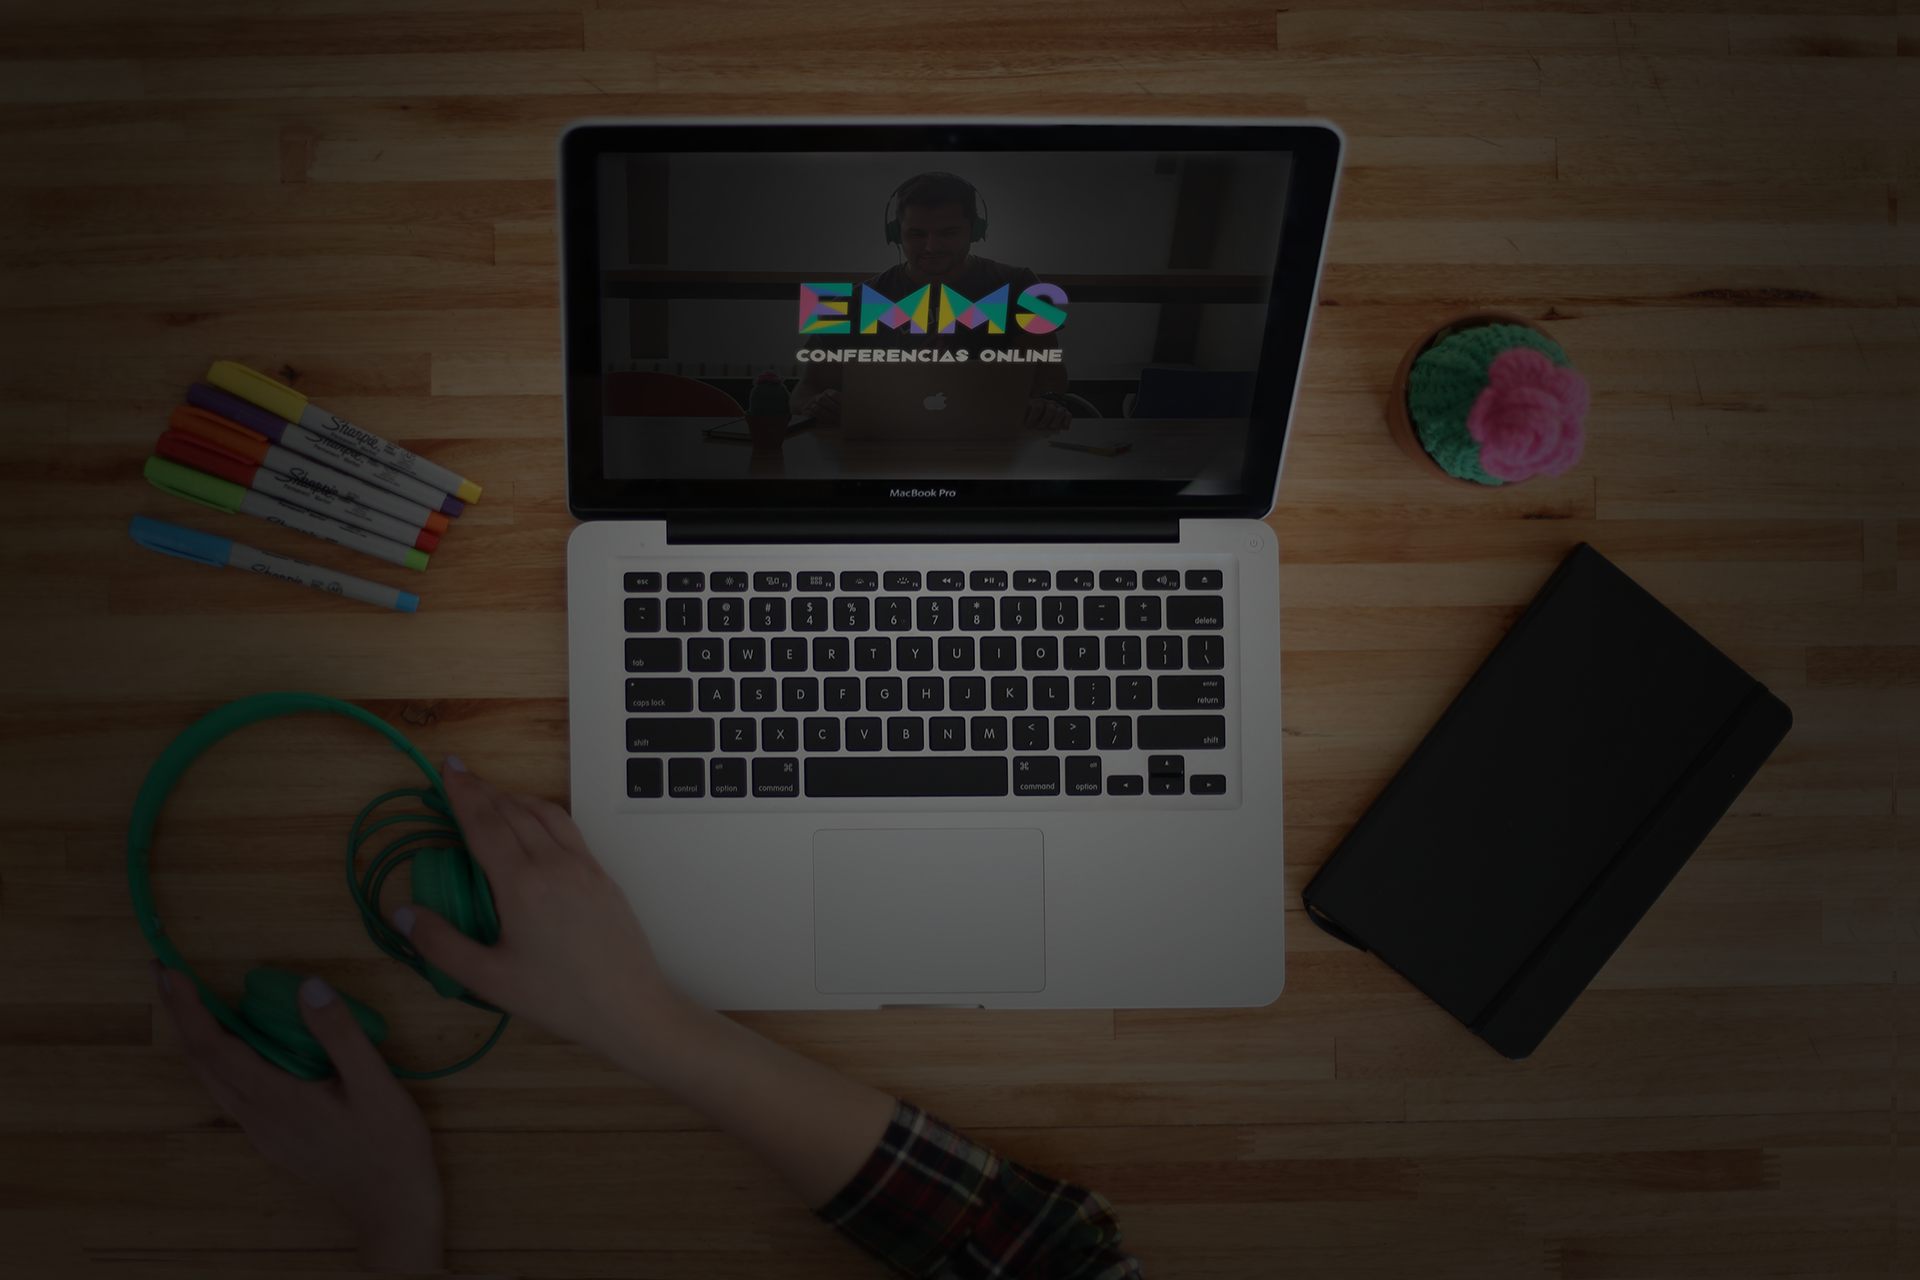 EMMS 2016: Regresan Las conferencias online gratuitas de marketing